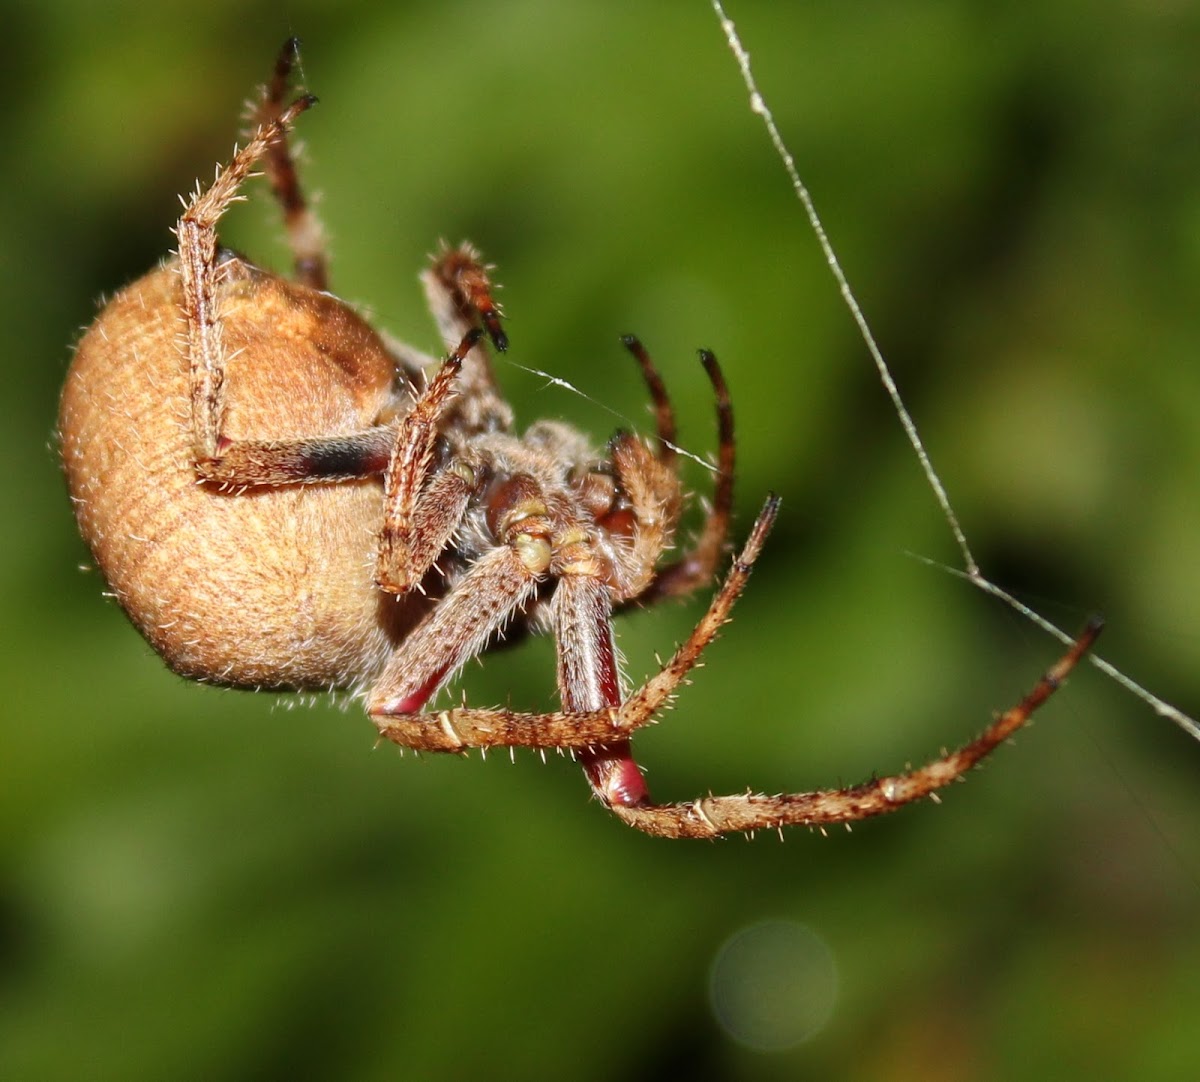 Spiky Hairy Field Spider